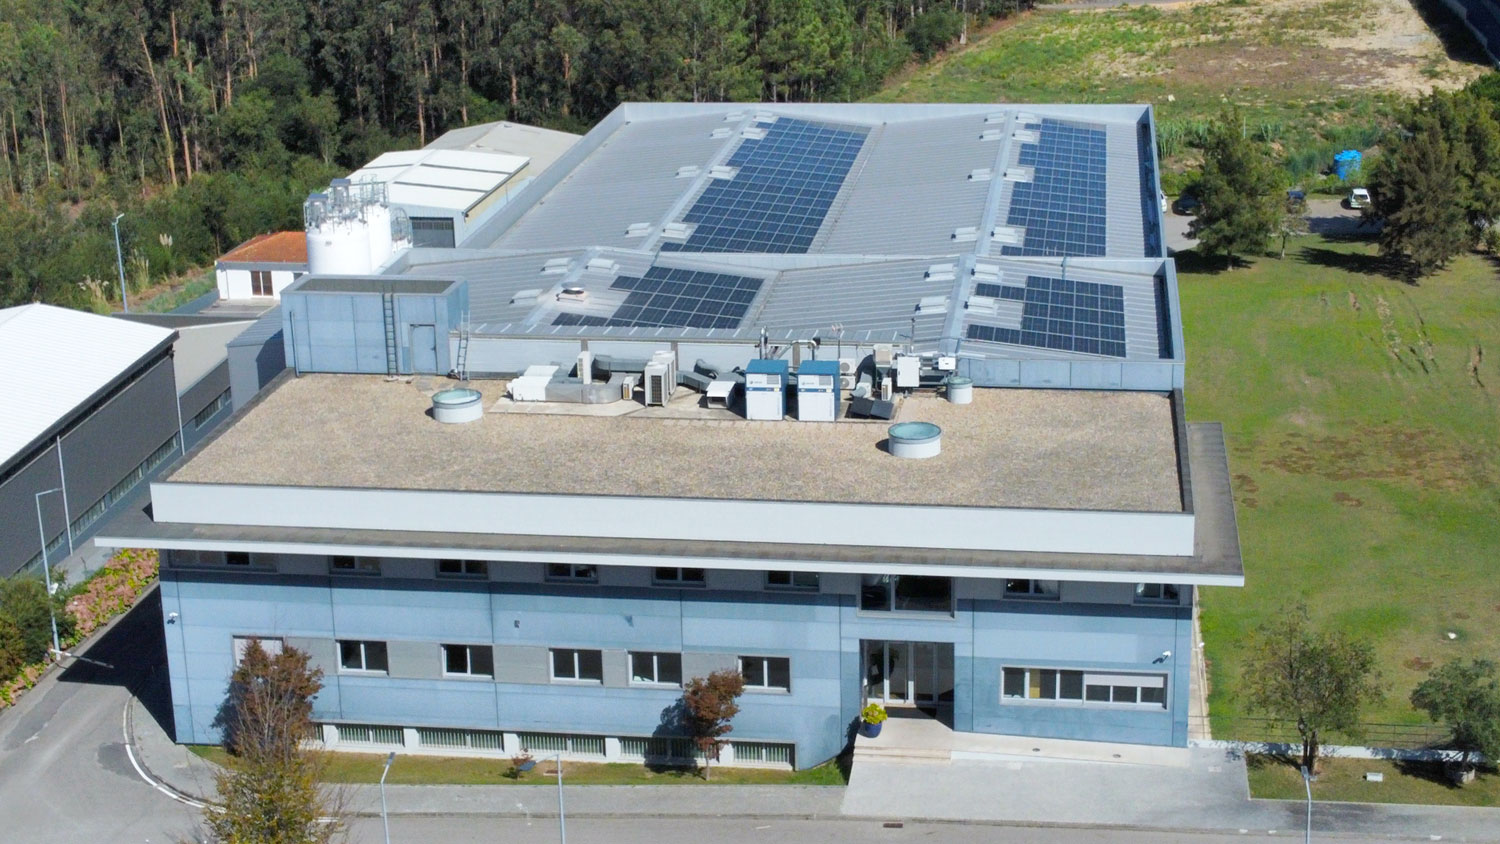 prodite zeelandia with solar panels